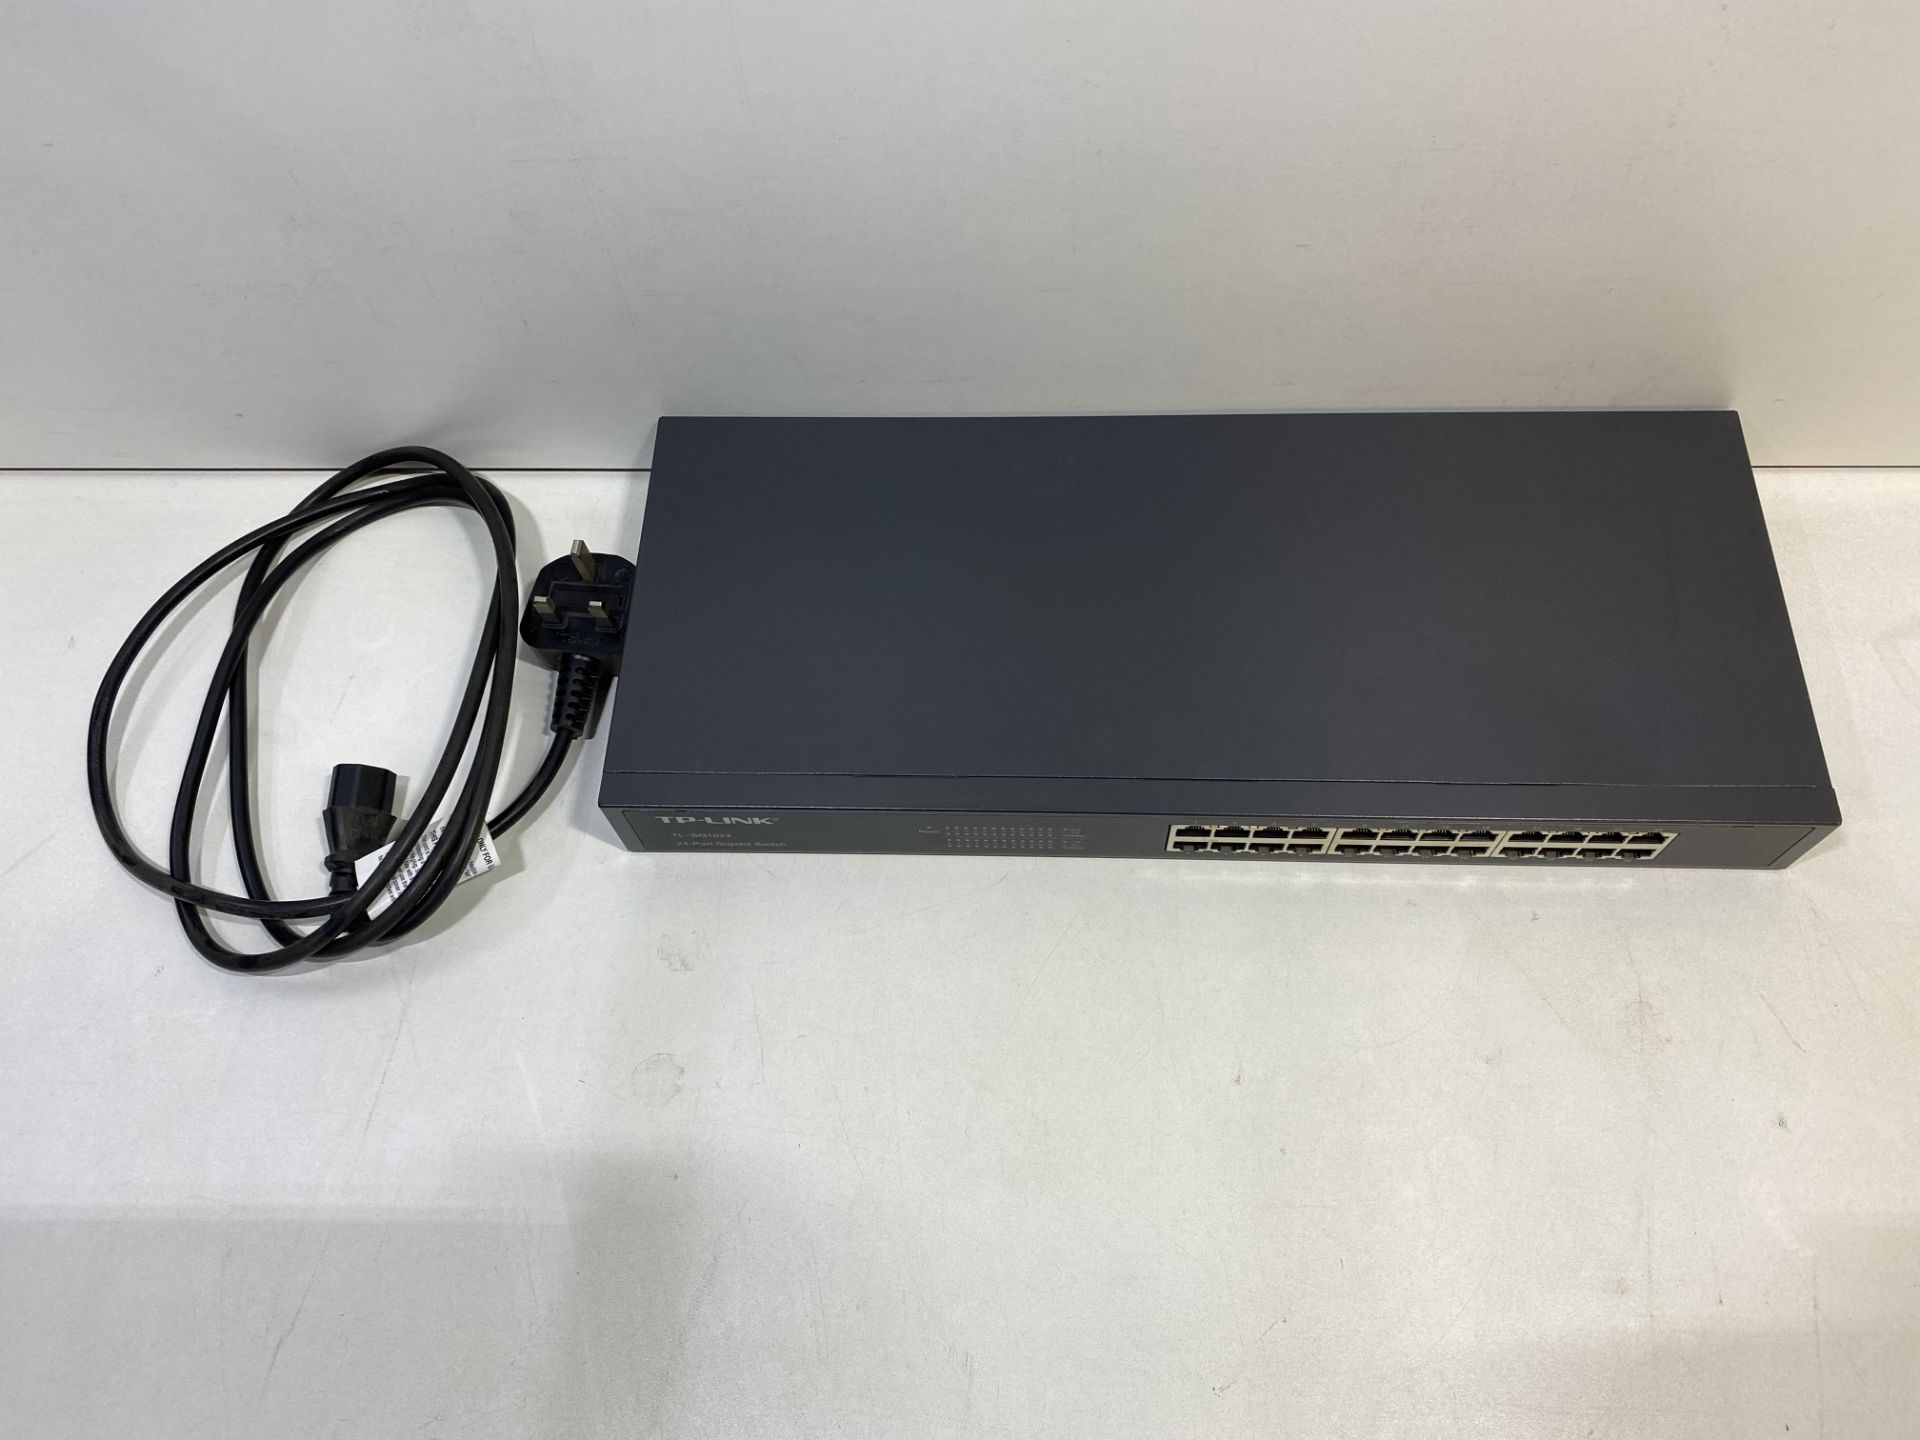 TP-Link TL-SG1024 24 Port Gigabit Ethernet Switch